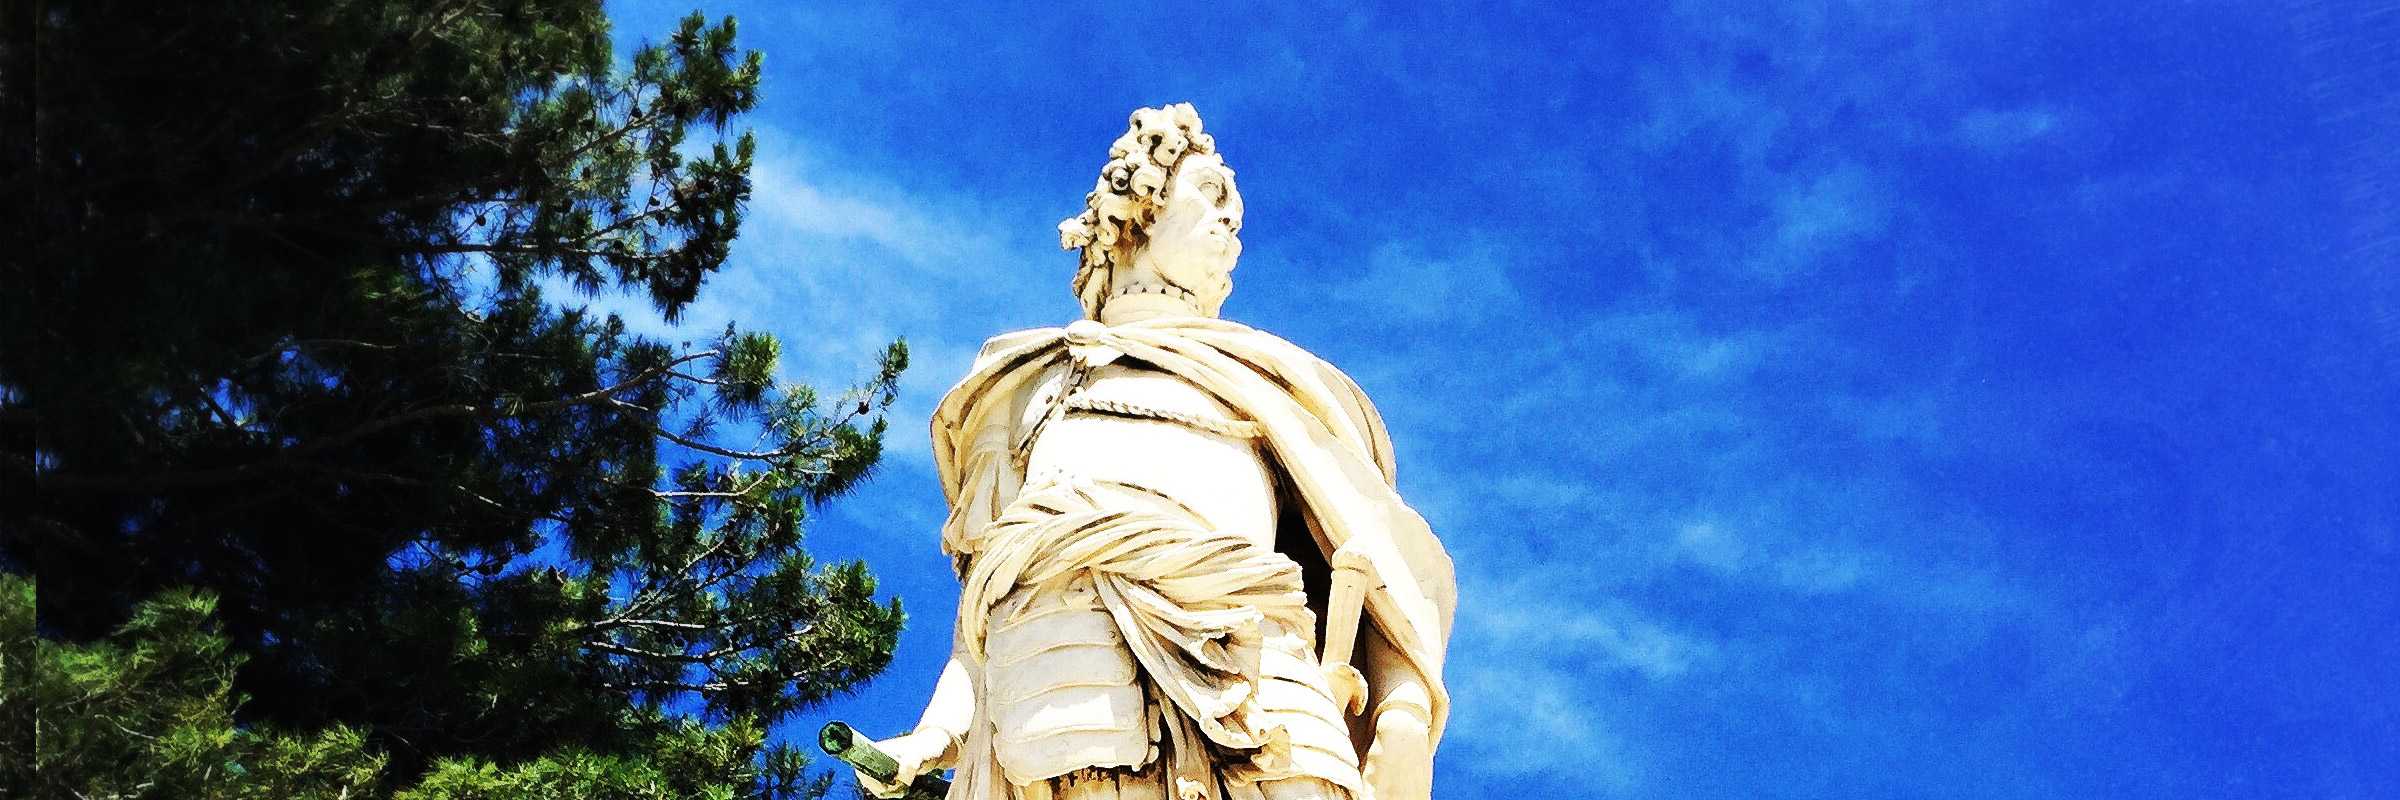 La statua di Antonio Corradini posizionata davanti all'entrata della Fortezza Vecchia di Corfù, raffigurante il condottiero Schulenburg. — (Archivio Venipedia/Bazzmann)